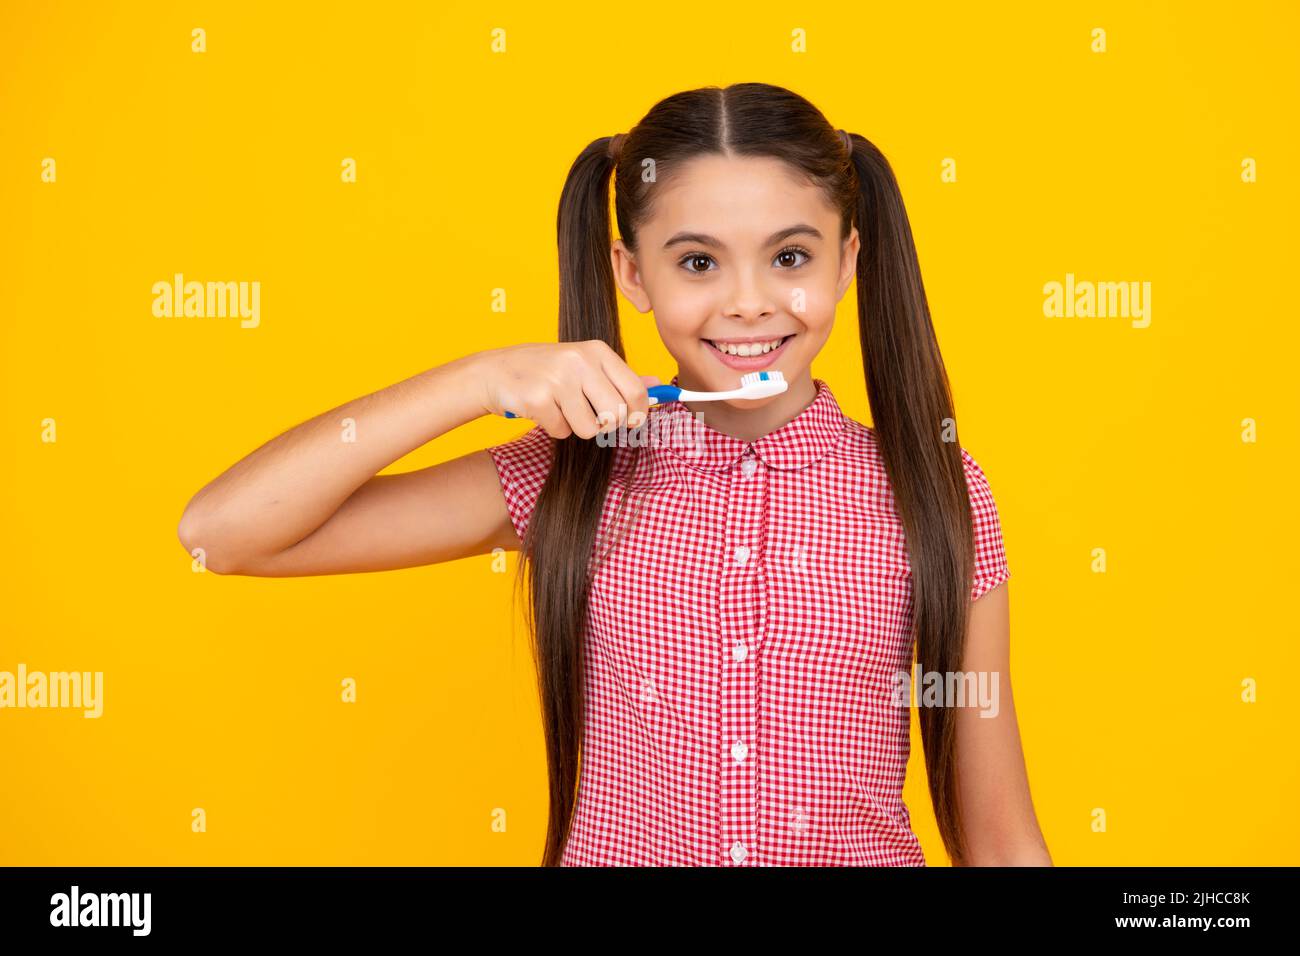 Une adolescente se brossant les dents sur un fond jaune isolé. Brosse à dents d'hygiène quotidienne pour adolescents, routine du matin. Soins dentaires soins buccaux Banque D'Images